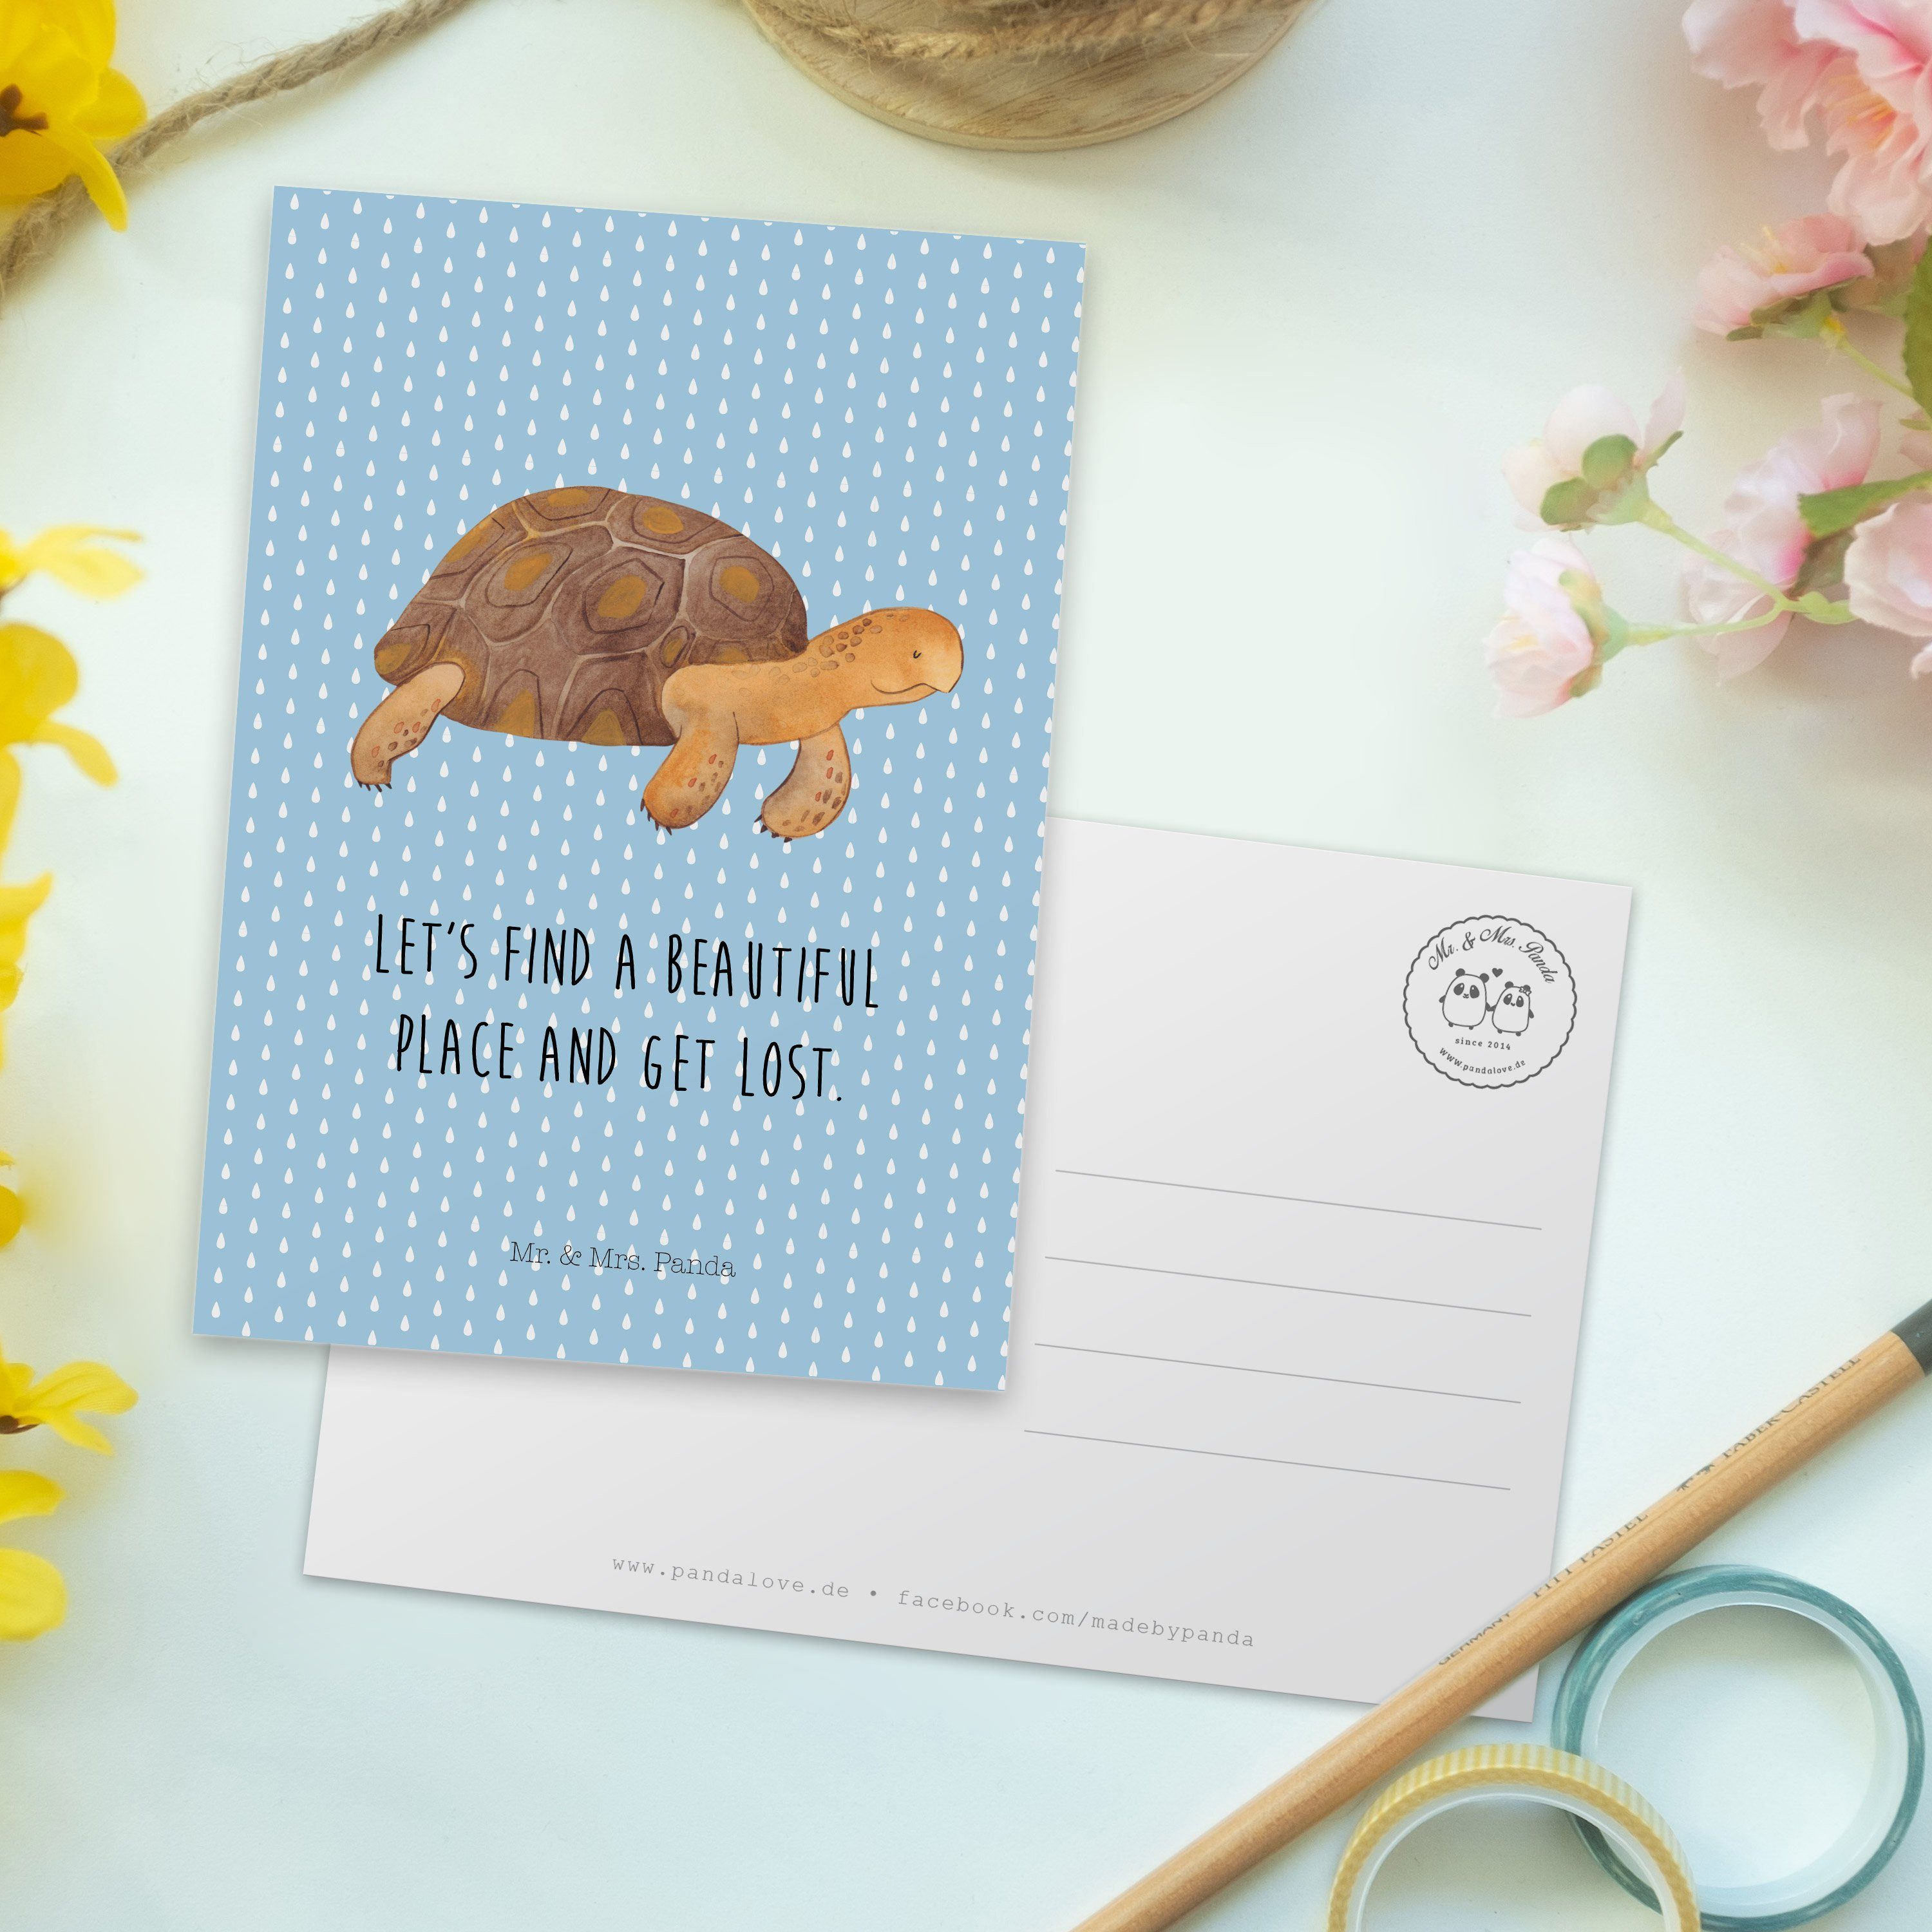 marschiert Panda Mrs. - Meer, Mr. & Schildkröte Schildkröten - Geschenk, Postkarte Blau Pastell